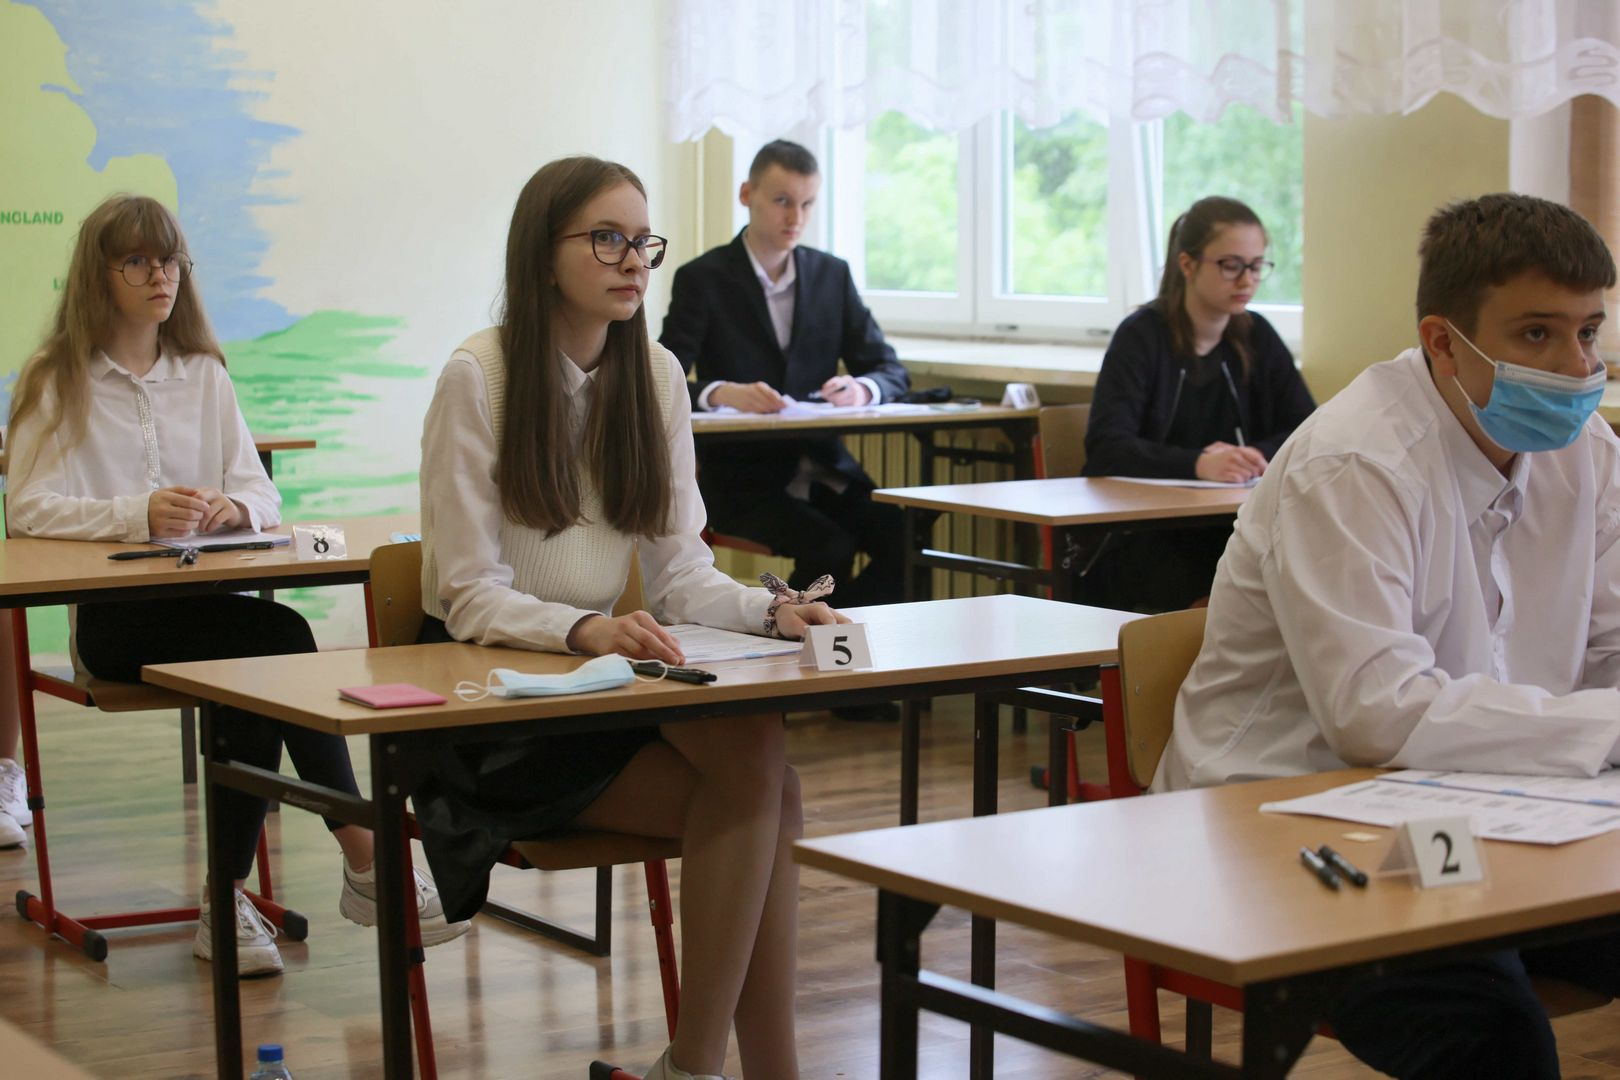 egzamin ósmoklasisty. cke publikuje najważniejsze informacje